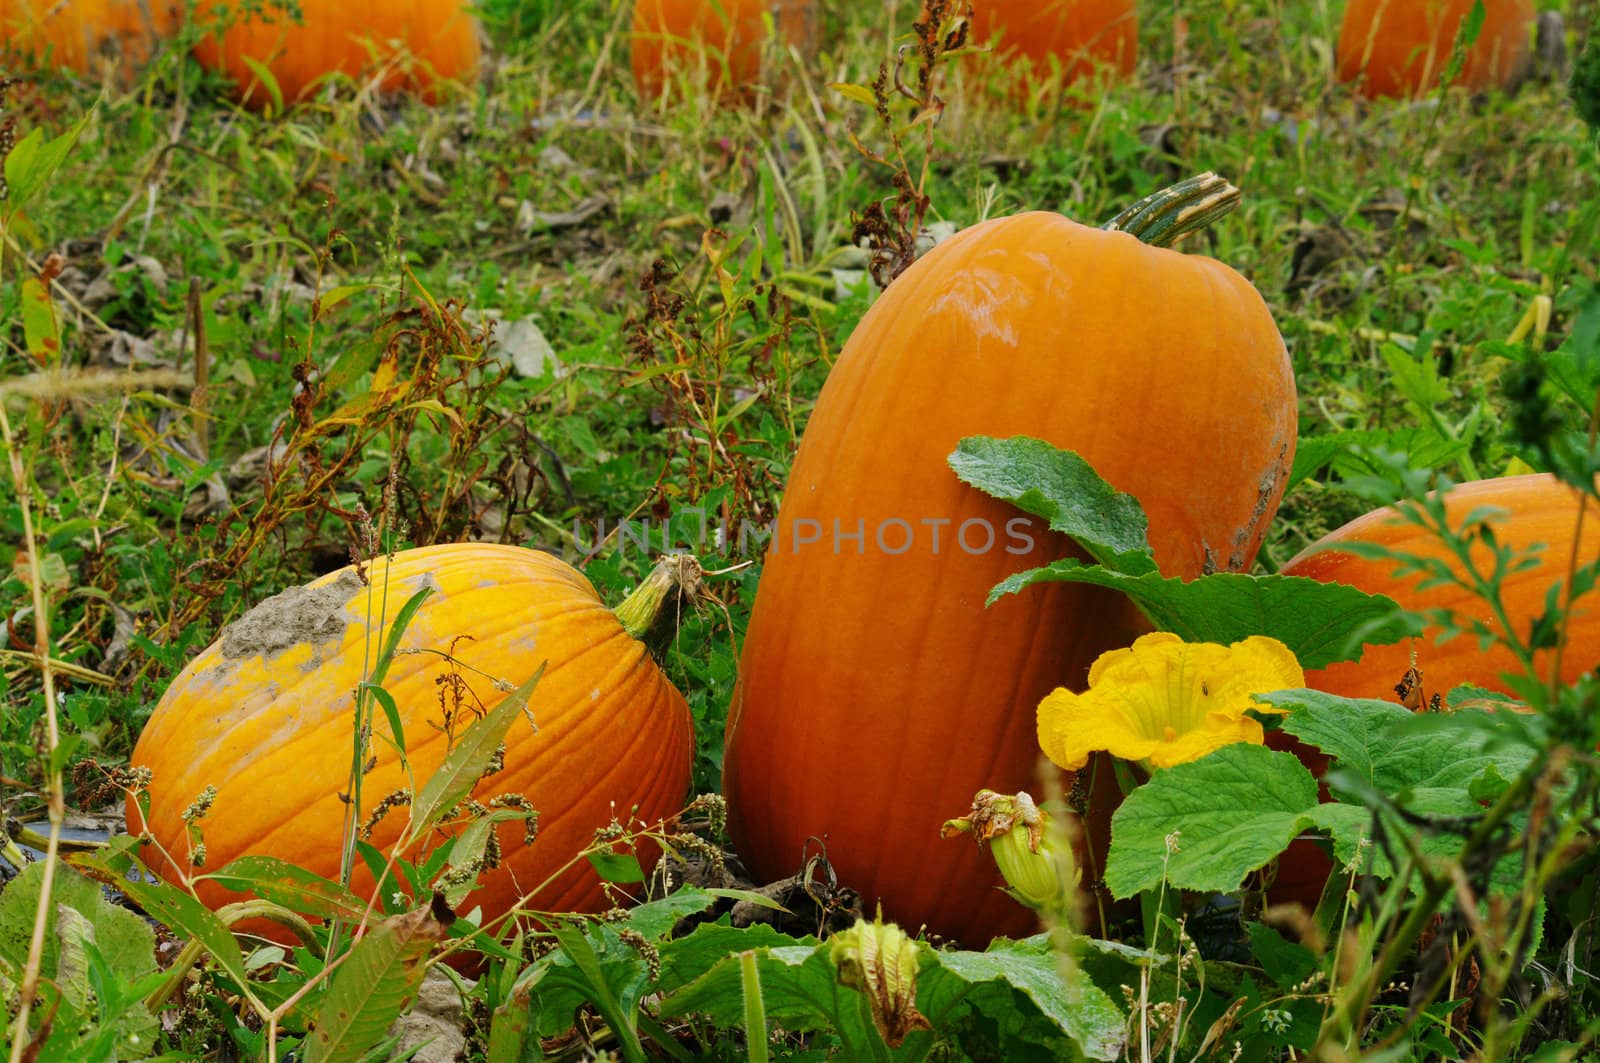 Pumpkins in the Field by edcorey